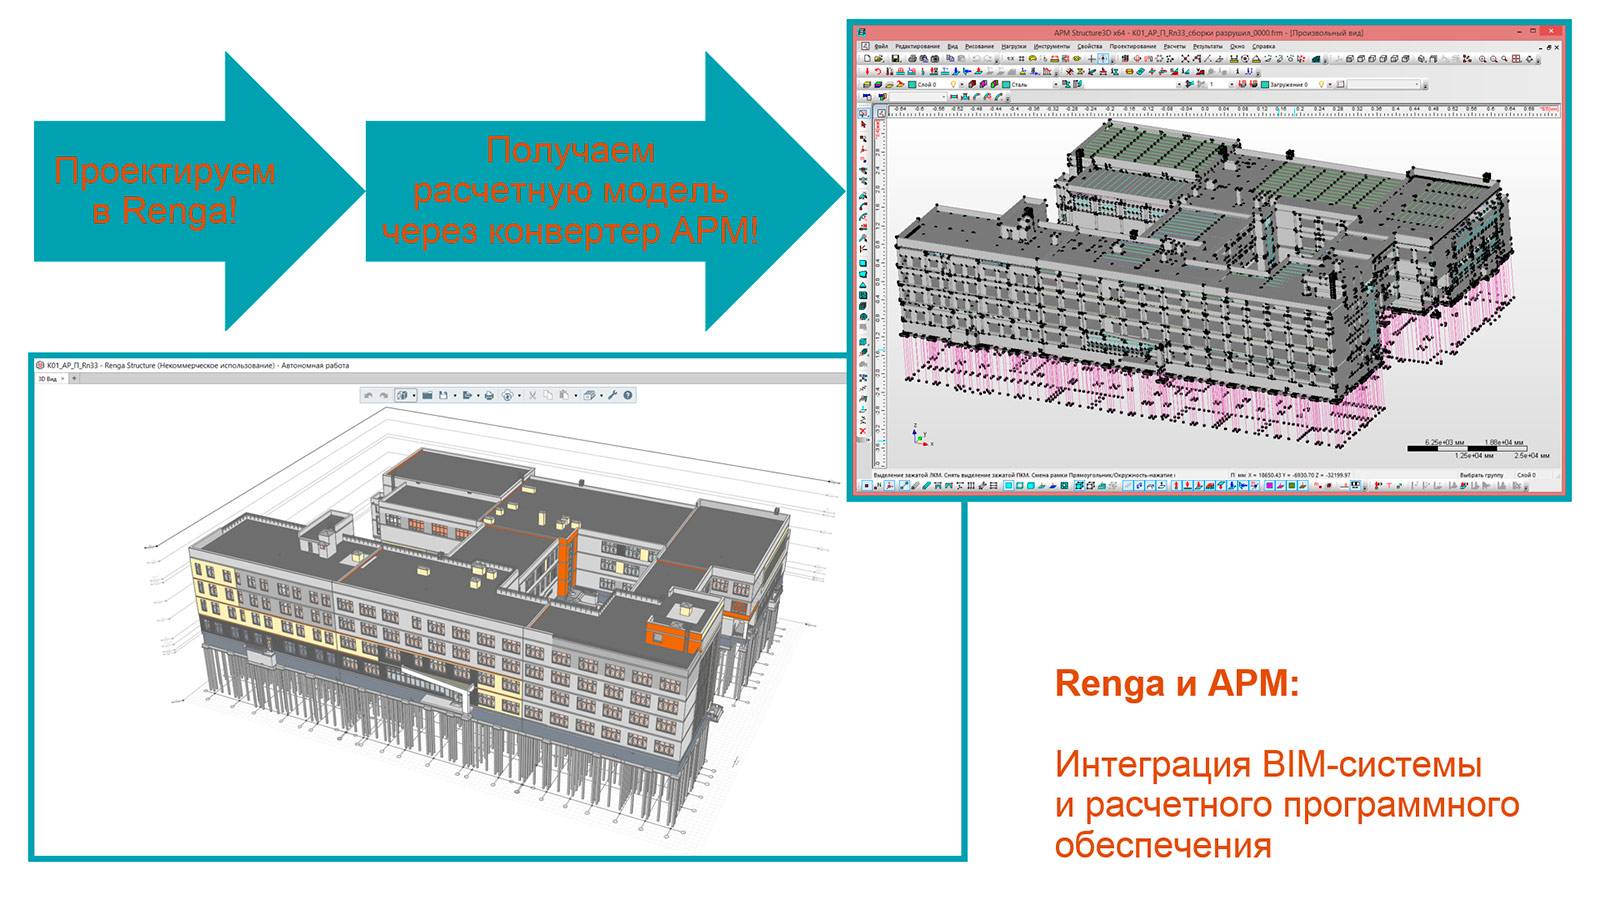 Рис. 8. Пример работы интеграционной связки BIM-системы RENGA 
и APM Civil Engineering